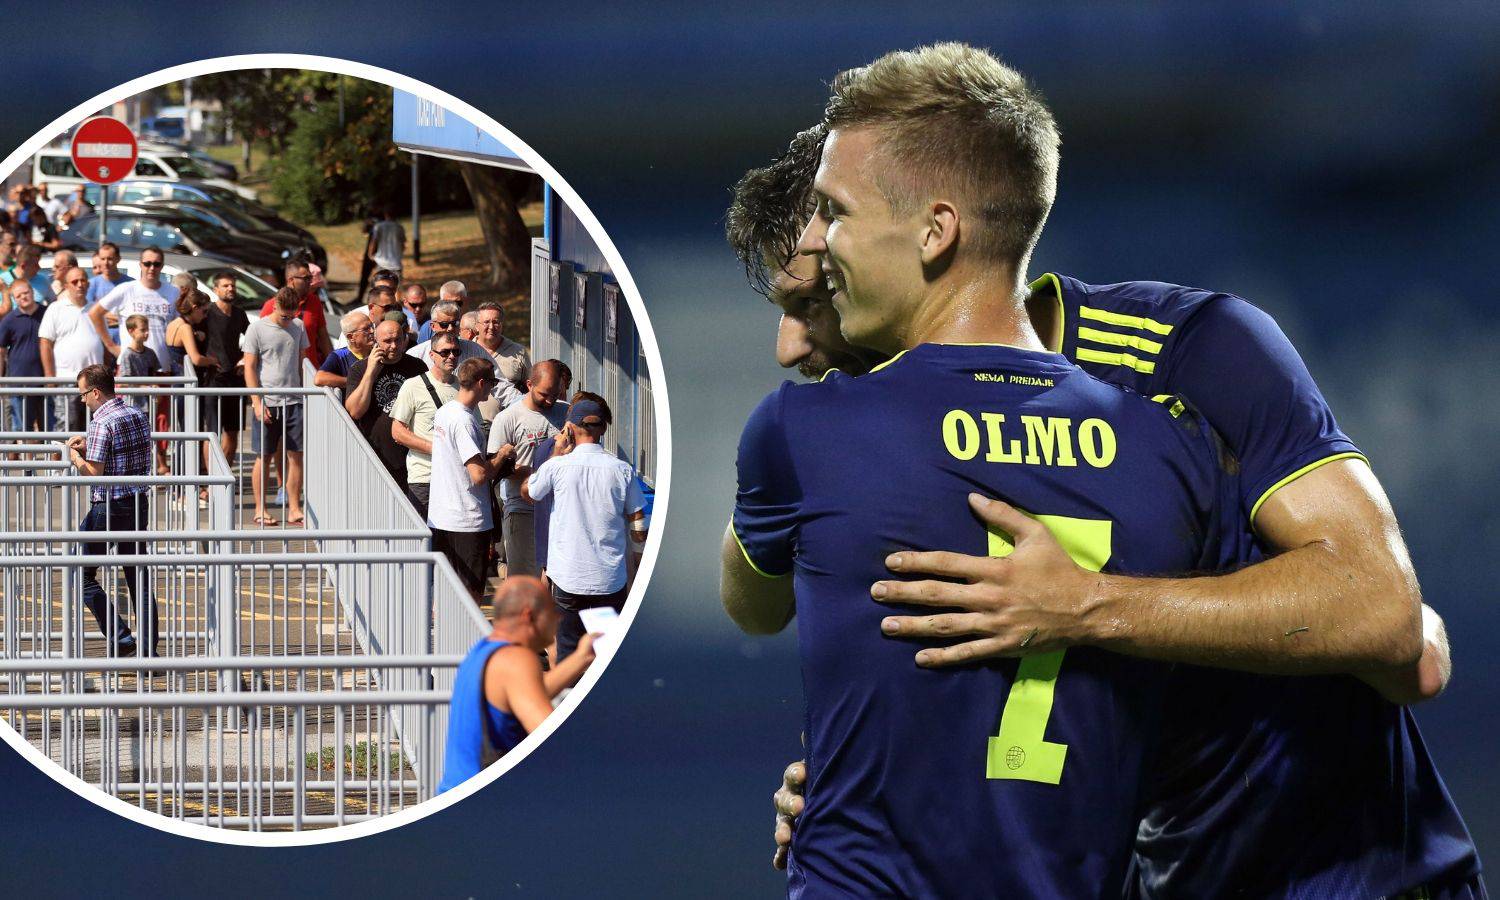 Dinamo je rasprodao godišnje, Olmo pozvan u A-vrstu 'furije'!